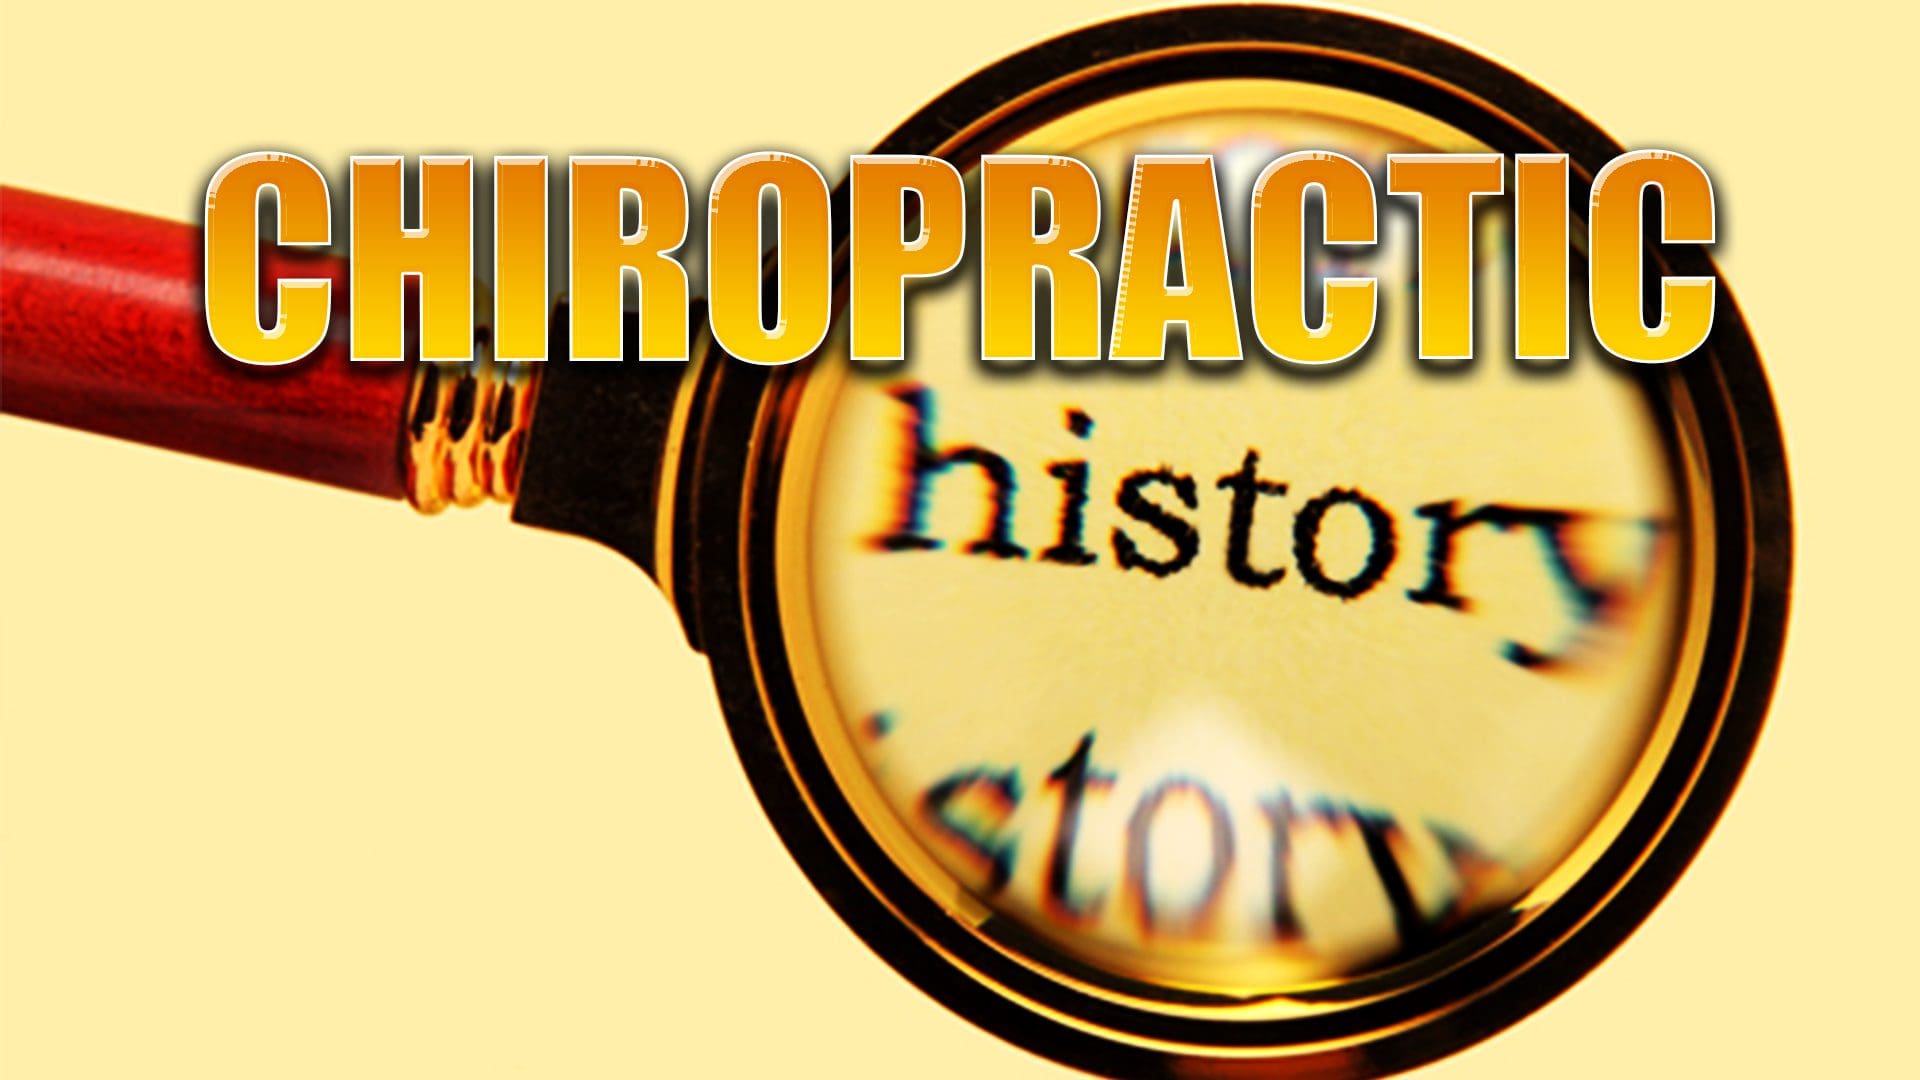 chiropractic history el paso tx.